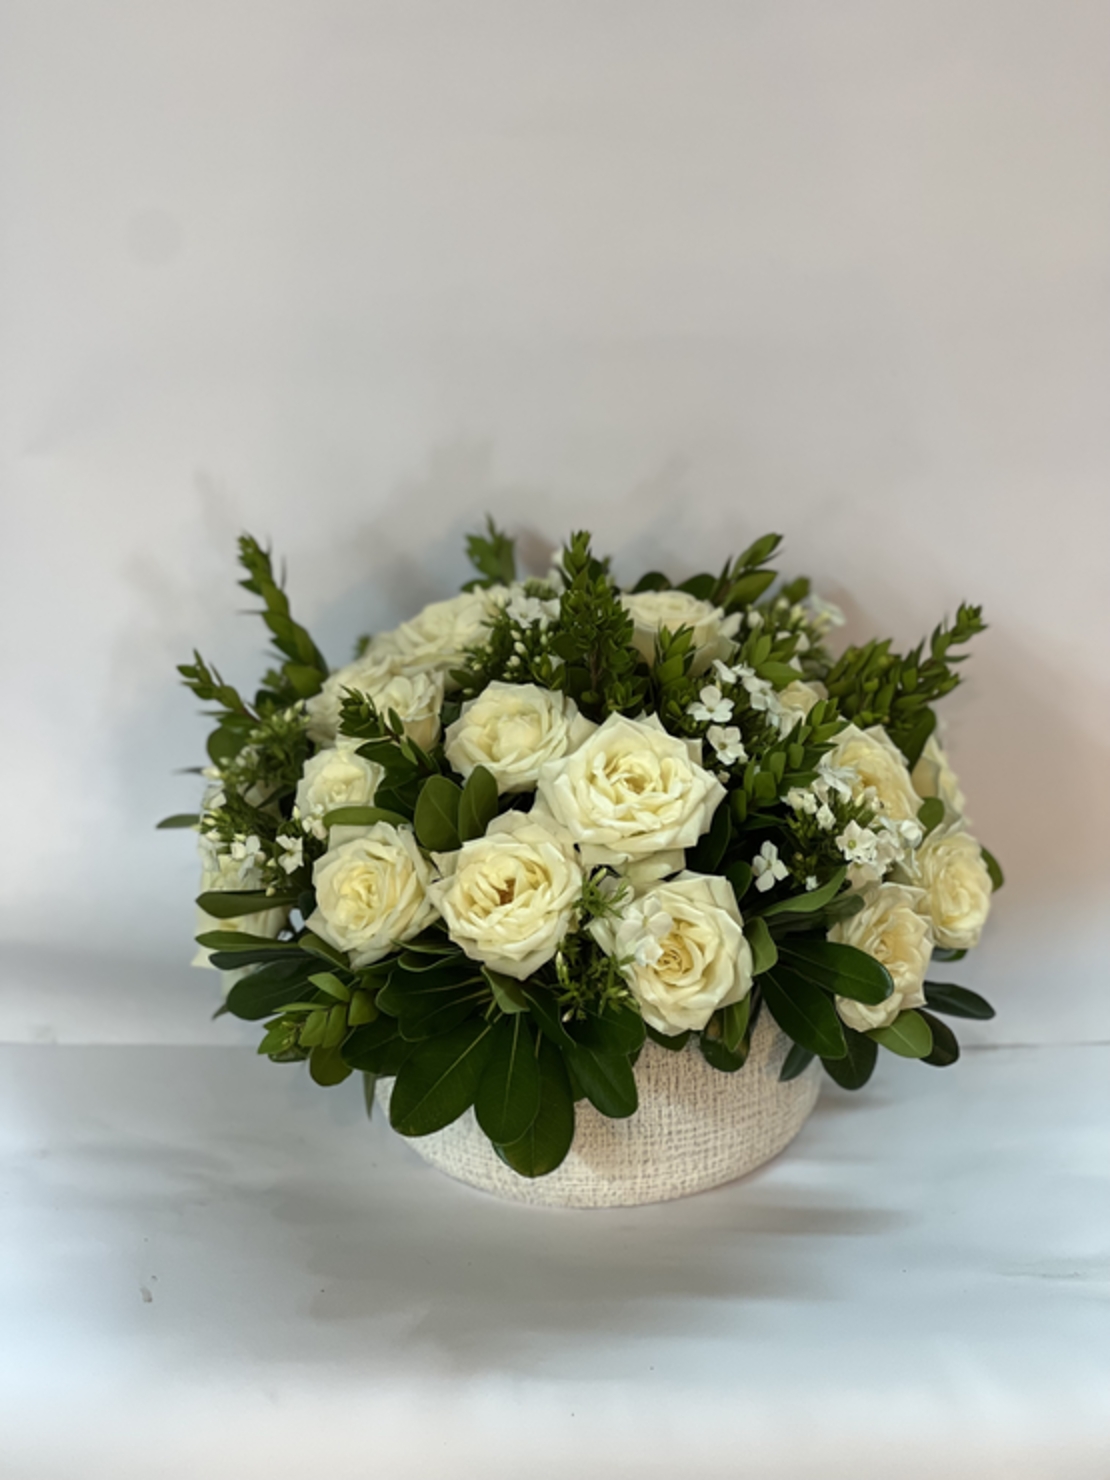 White and festive flower arrangement